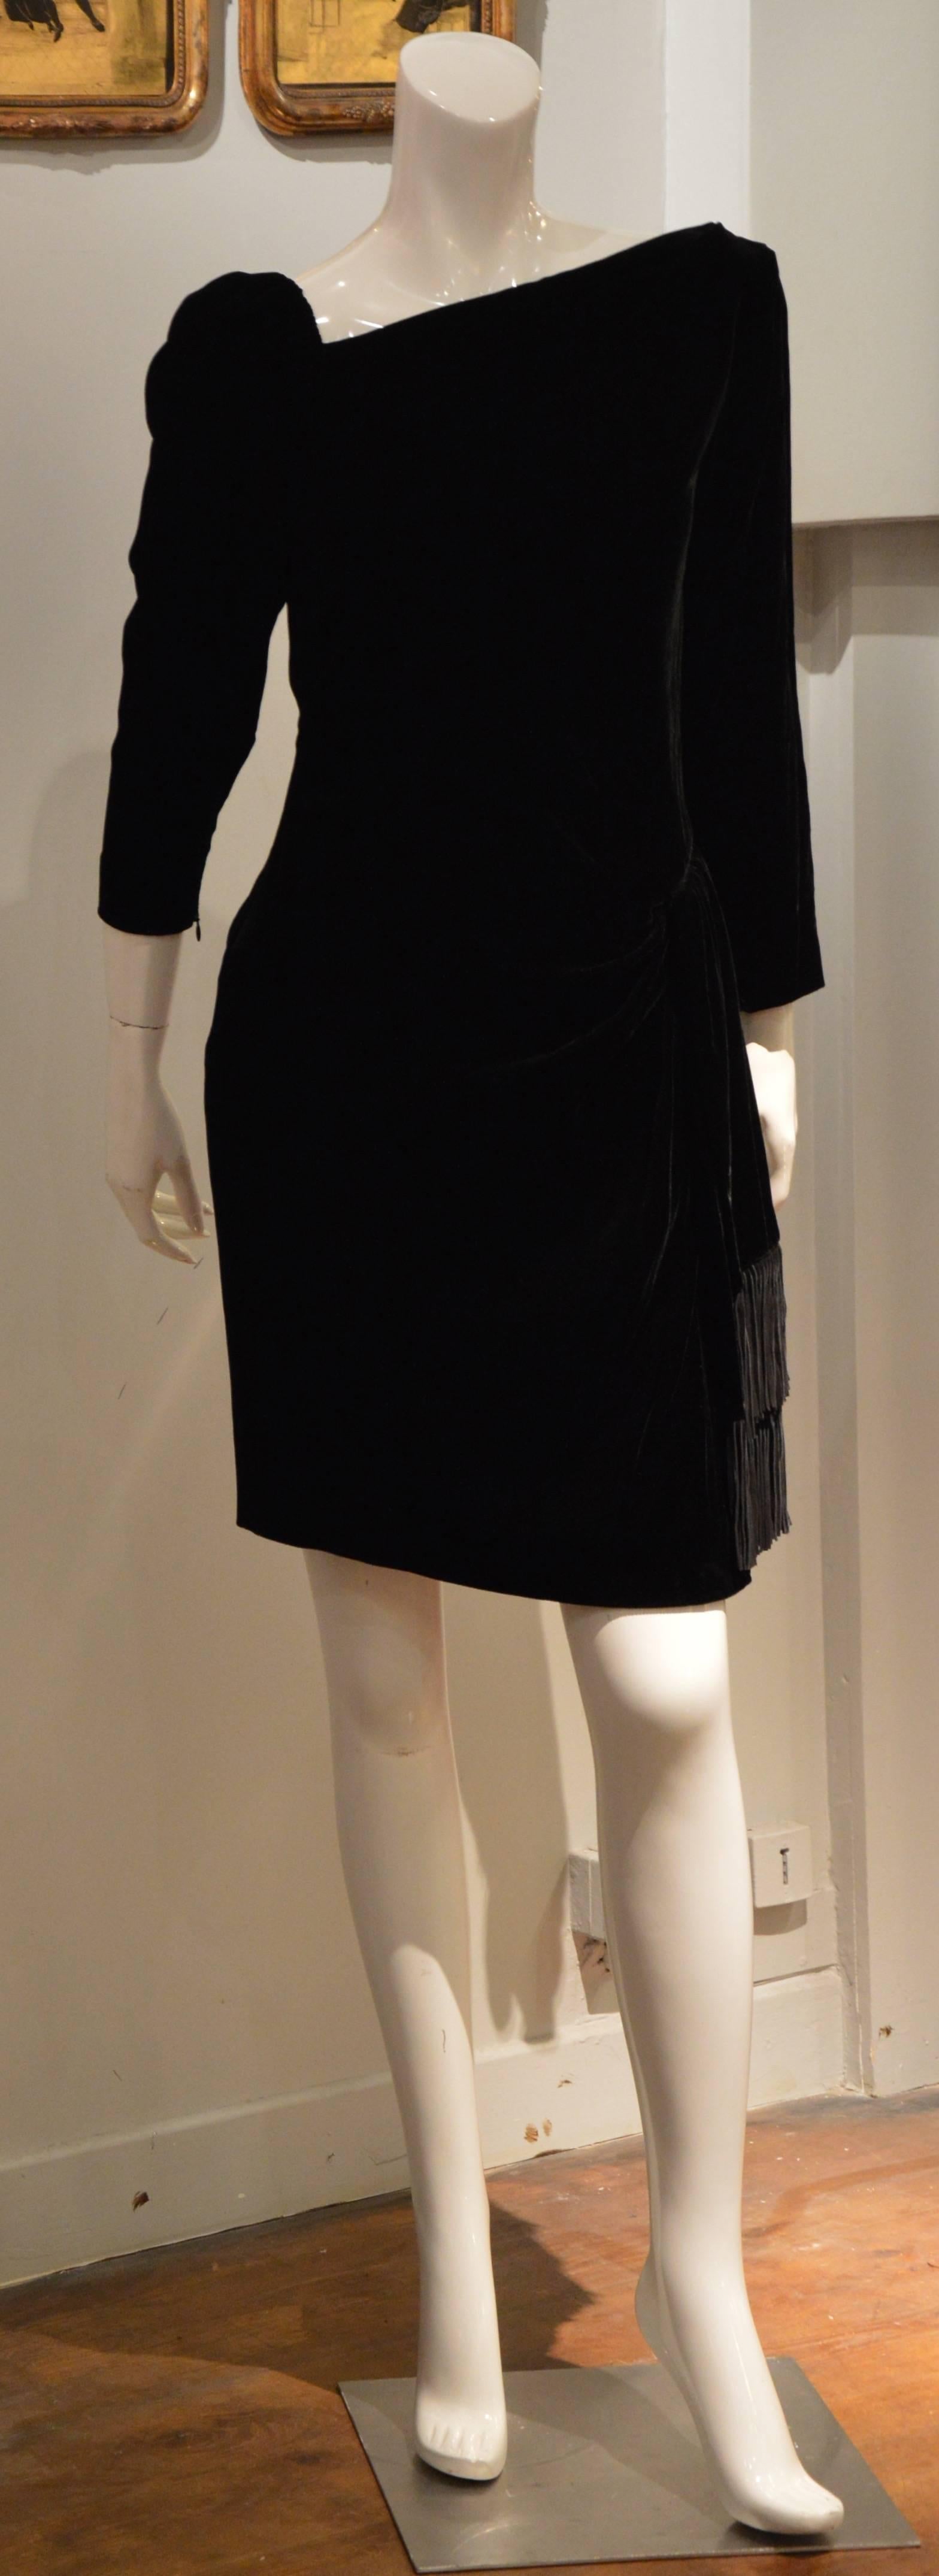 Rare 1990s Yves Saint Laurent Rive Gauche Edgy Black Velvet Waist Dress 2